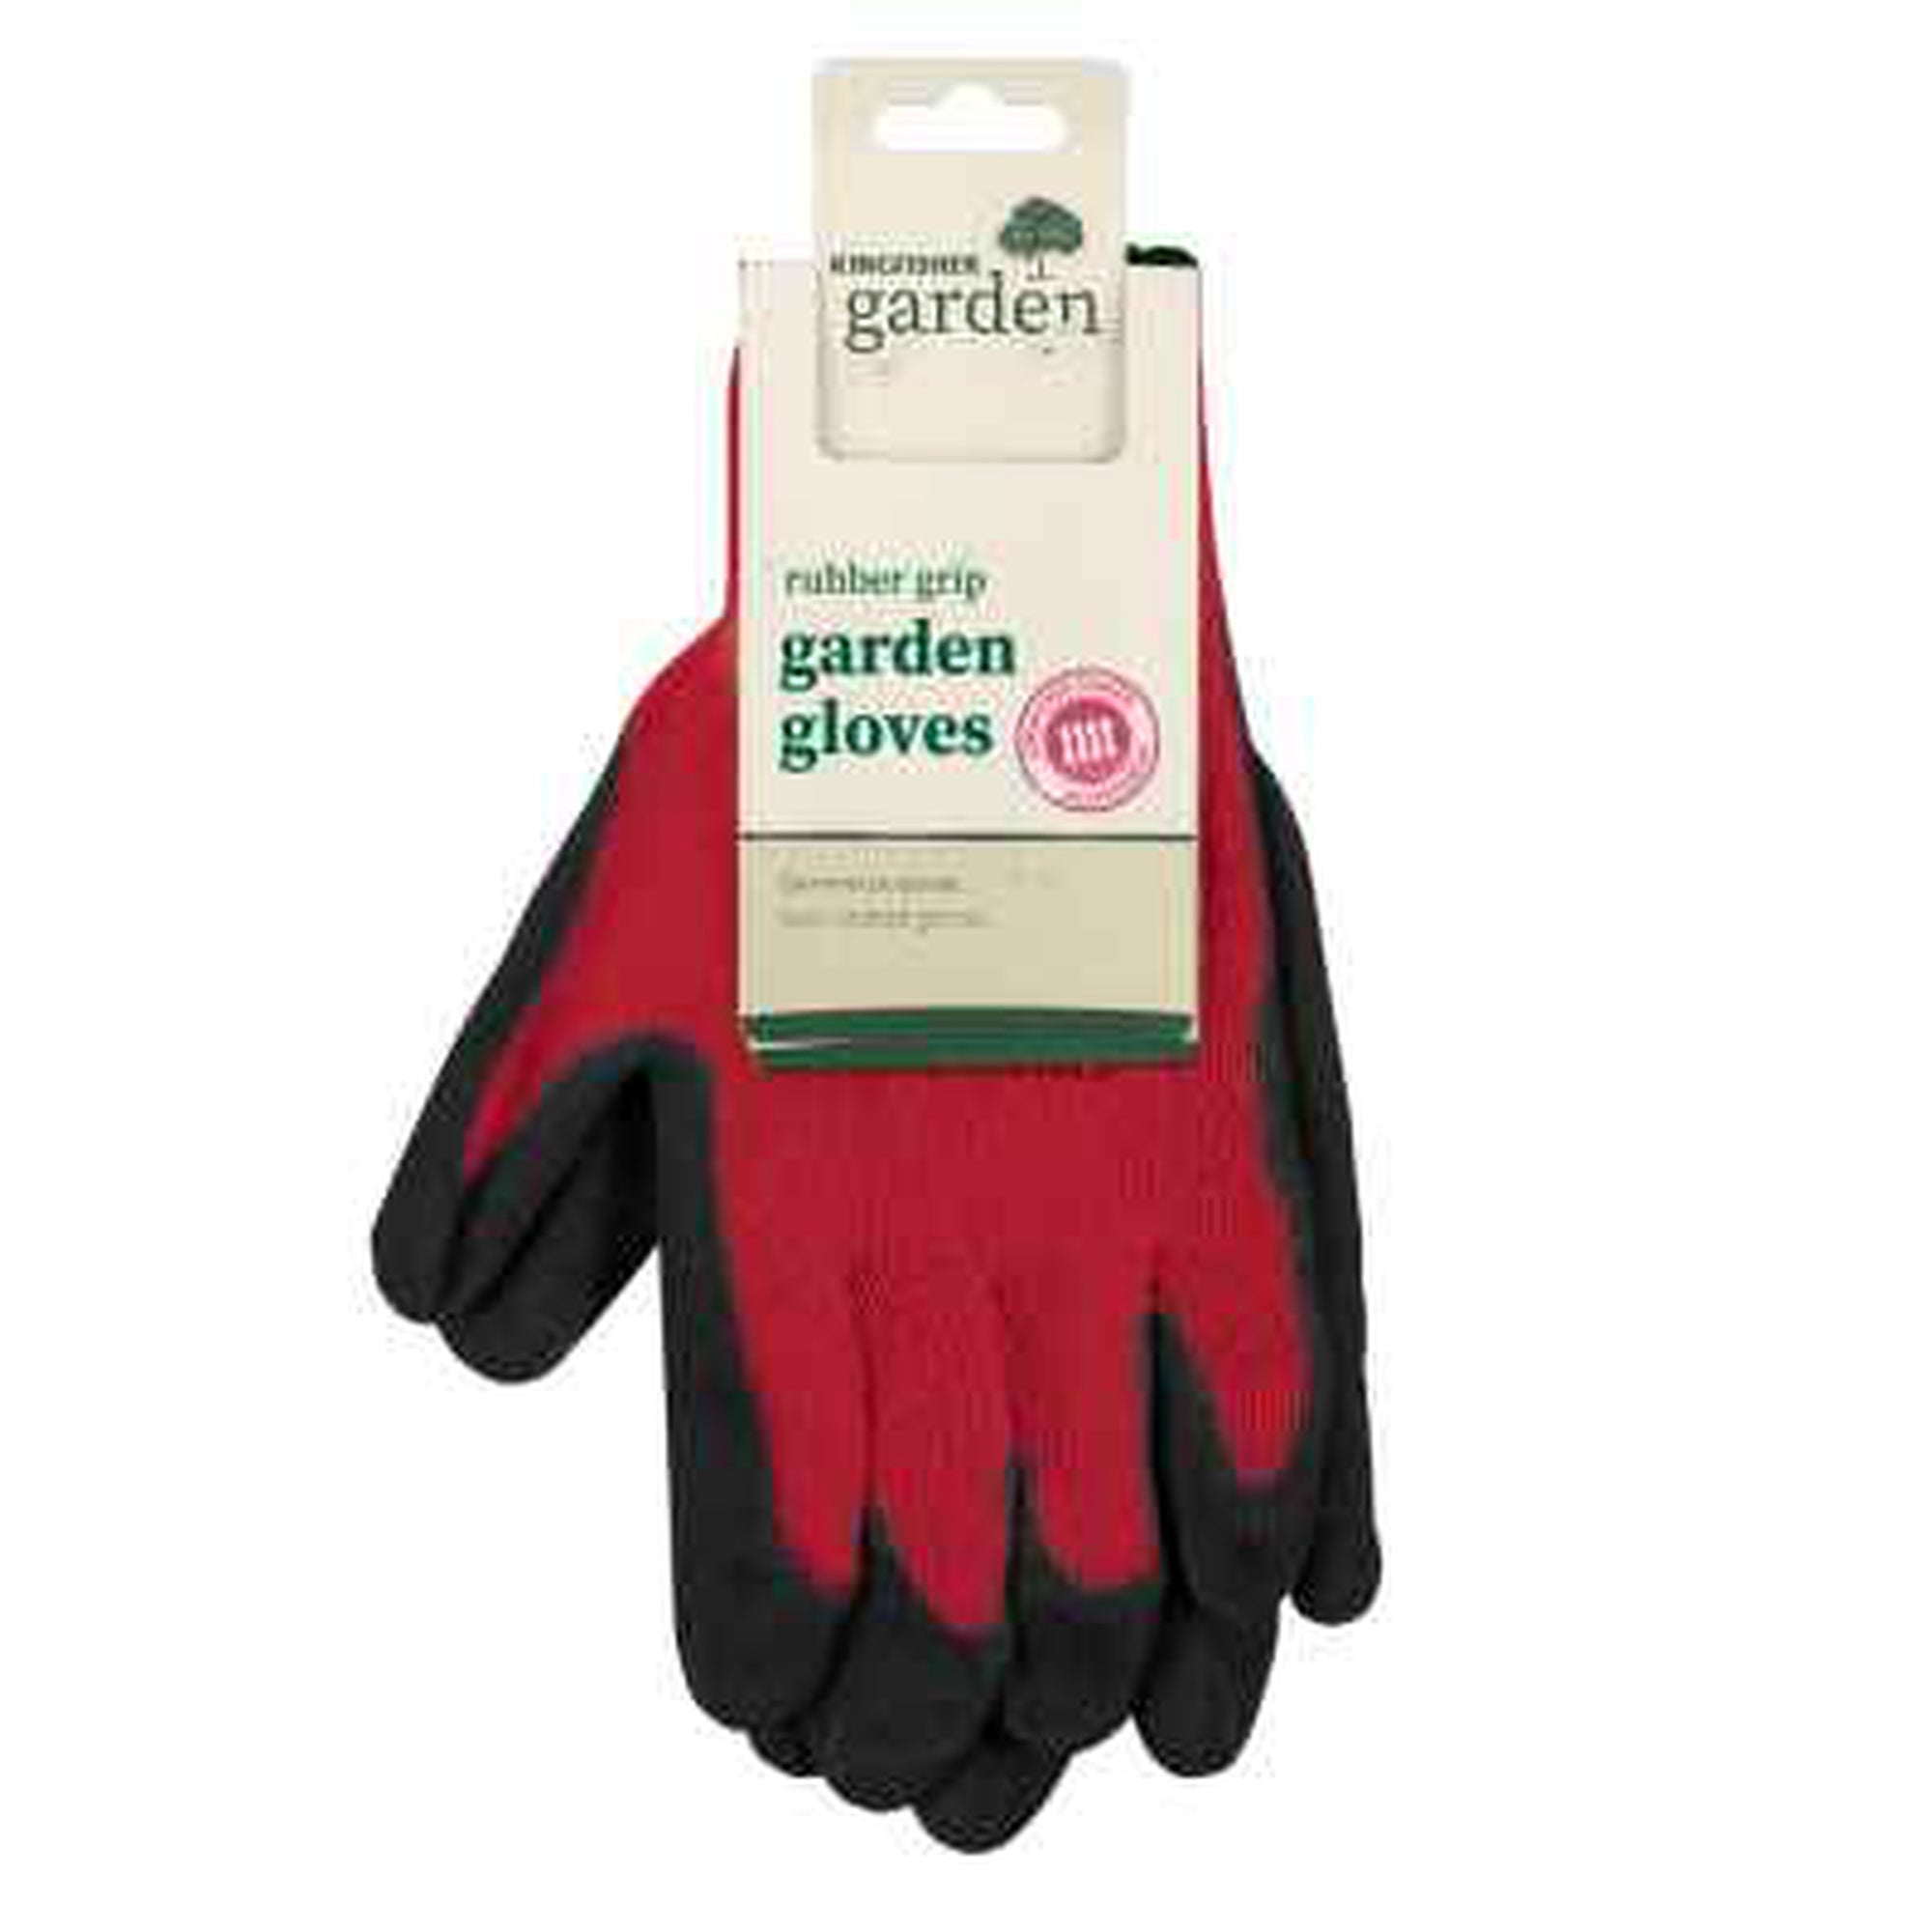 Rubber Grip Garden Gloves